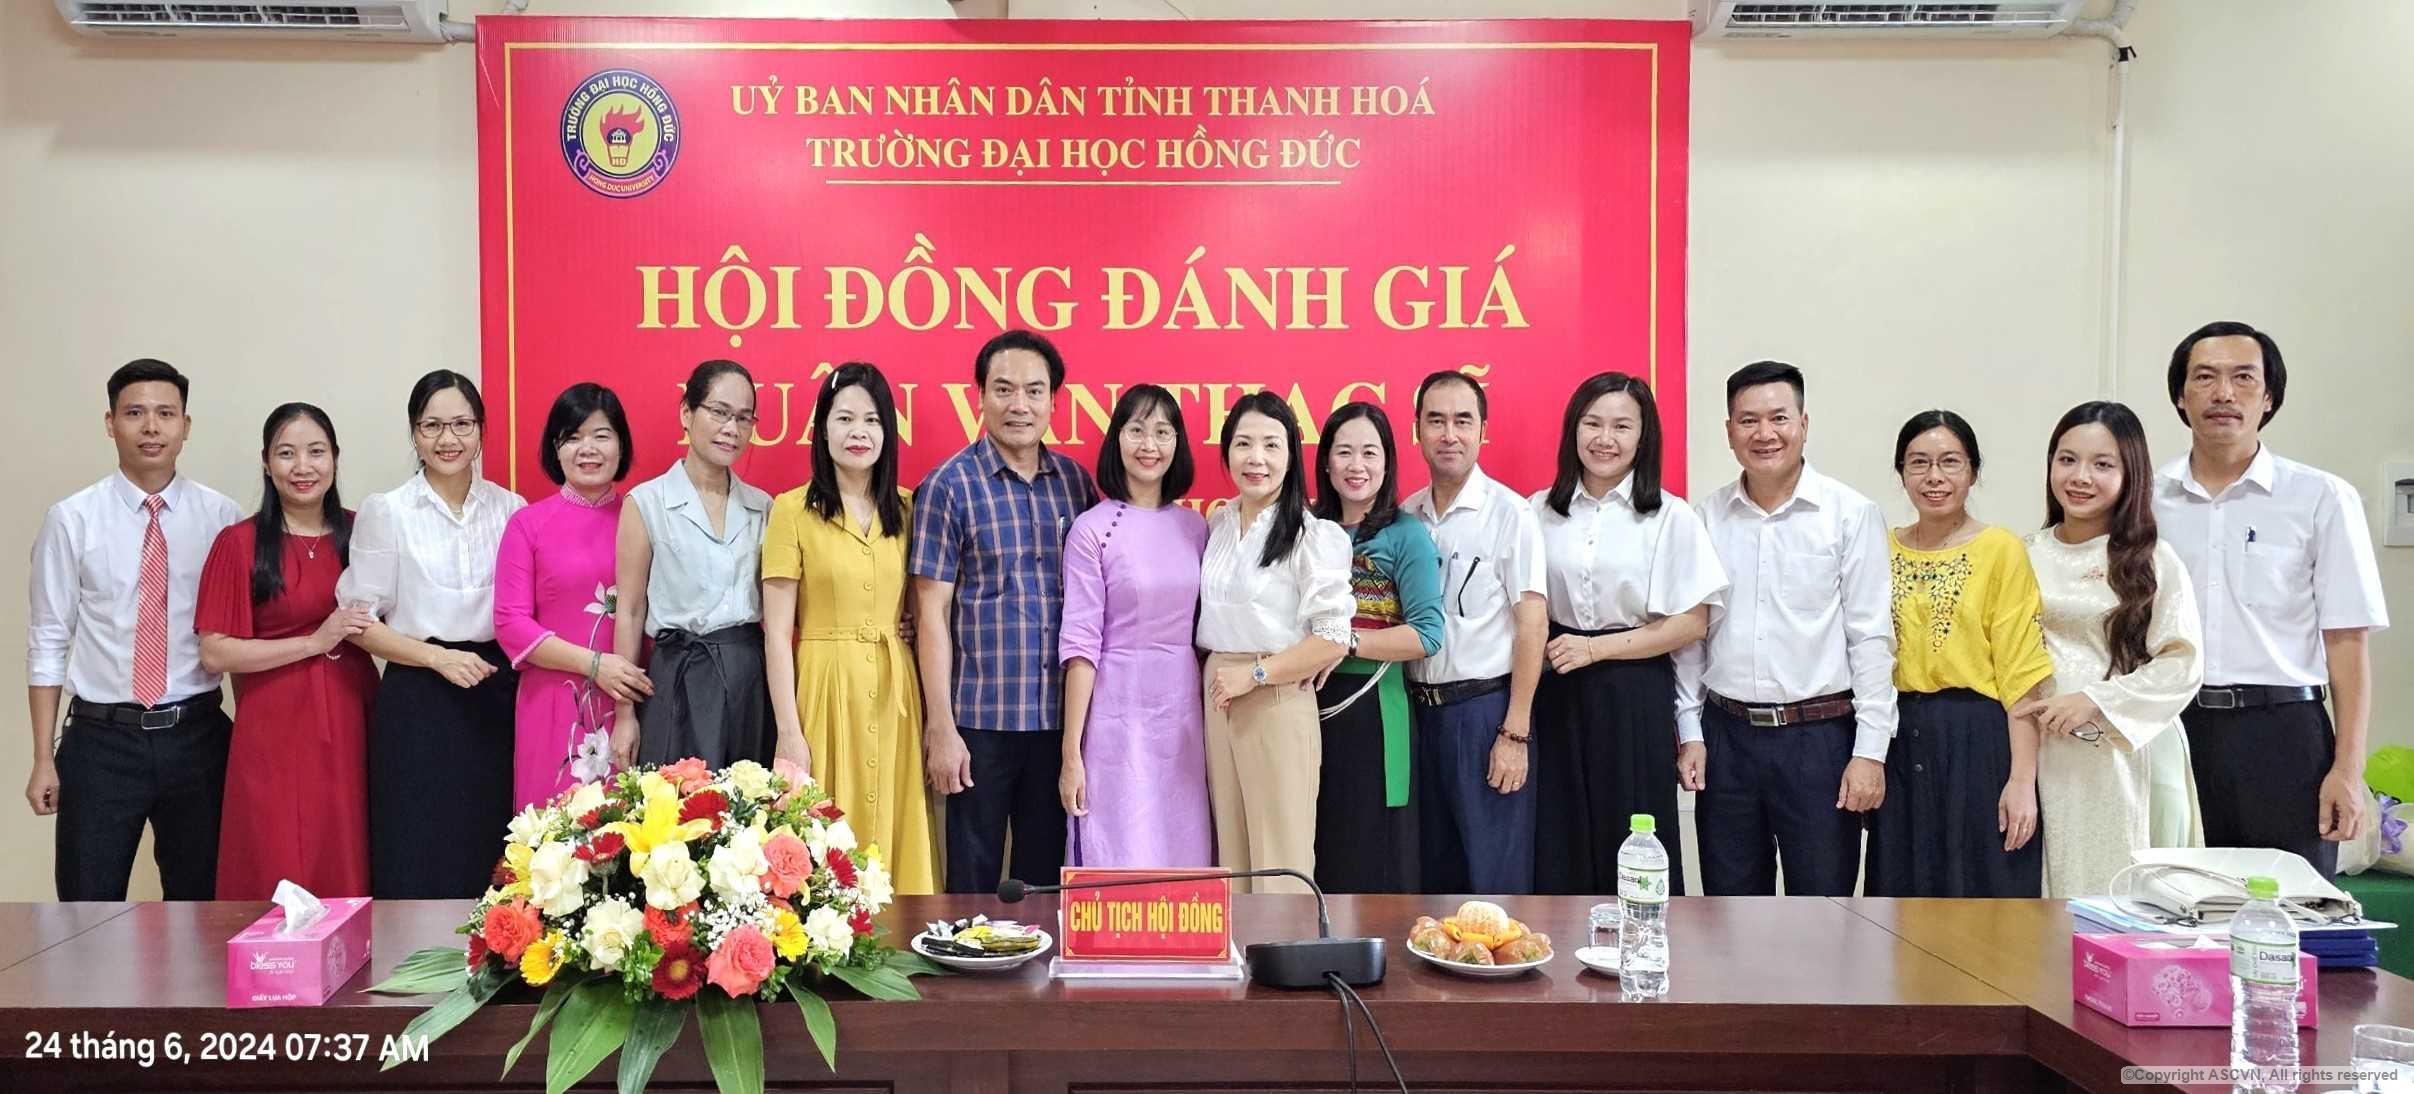 Học viên chuyên ngành Văn học Việt Nam khóa 15 bảo vệ thành công luận văn Thạc sĩ - Quả ngọt cuối năm